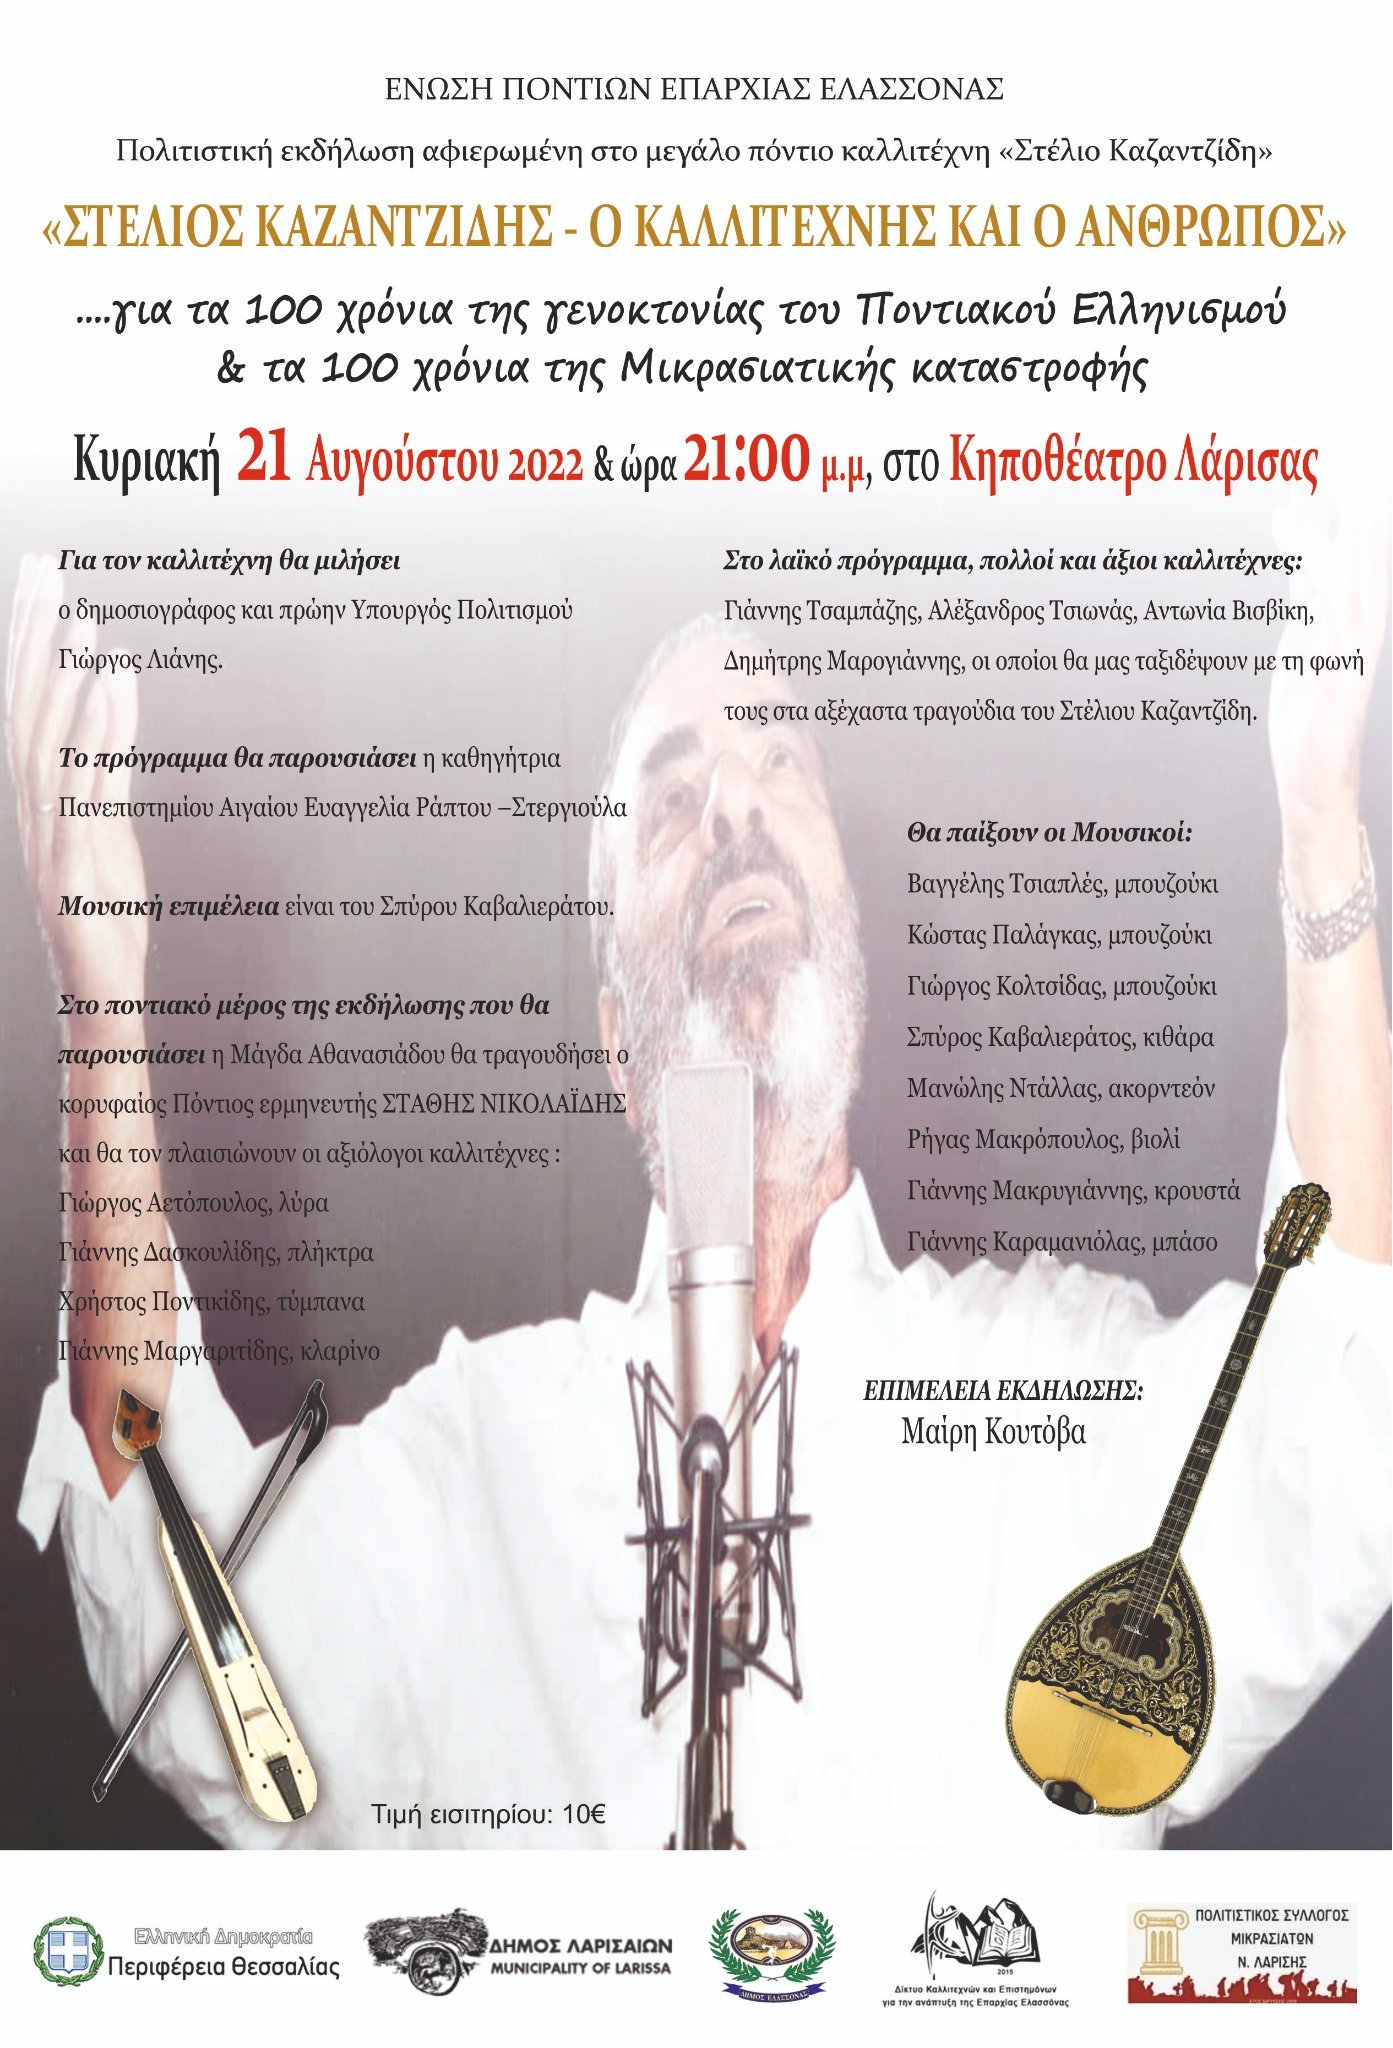 Λάρισα: Μουσικοχορευτική εκδήλωση - αφιέρωμα στον Στέλιο Καζαντζίδη στο Κηποθέατρο